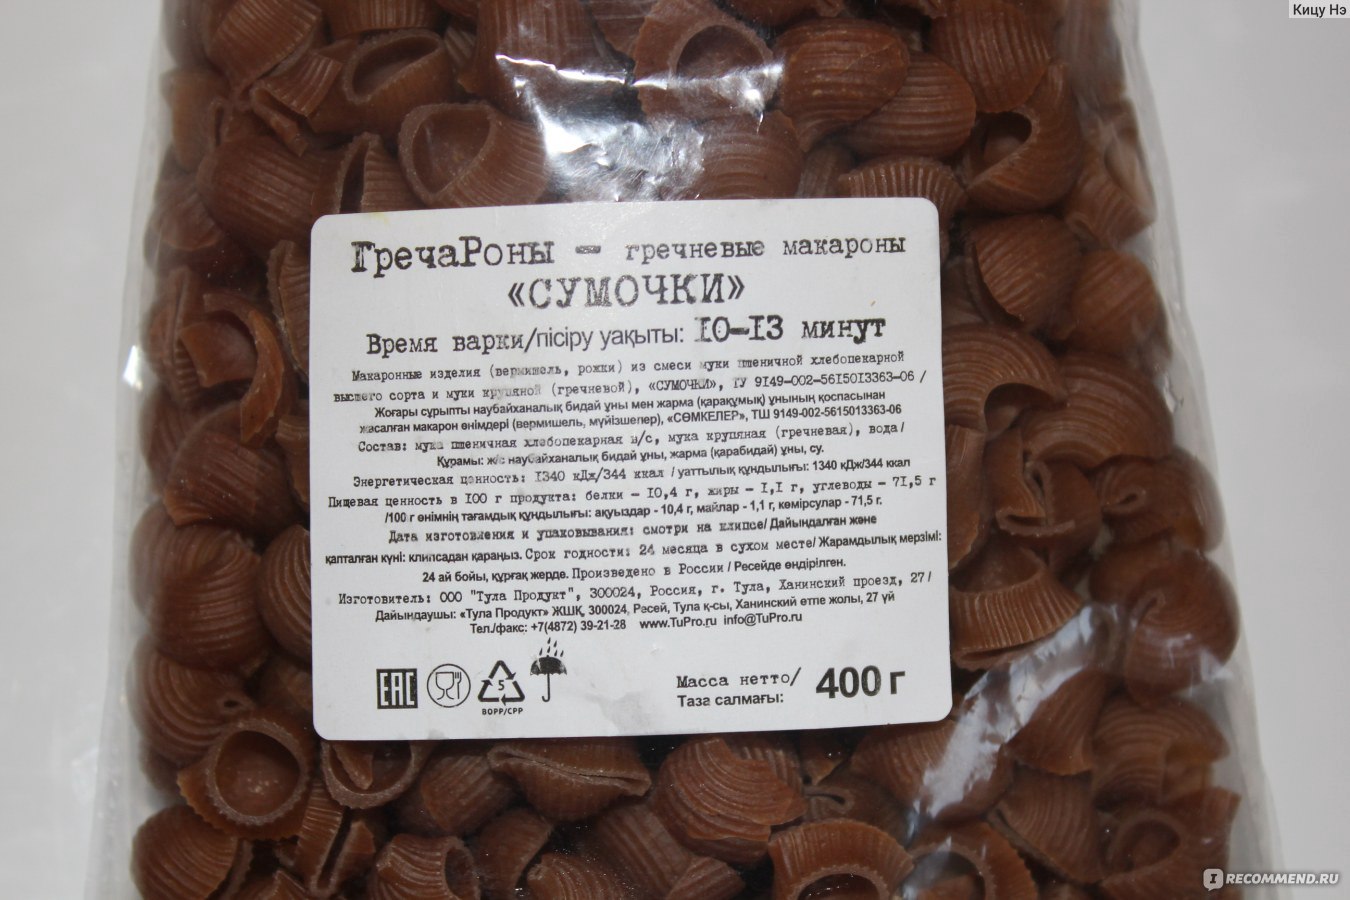 Макаронные изделия Тула продукт ГречаРоны гречневые макароны "Сумочки" фото